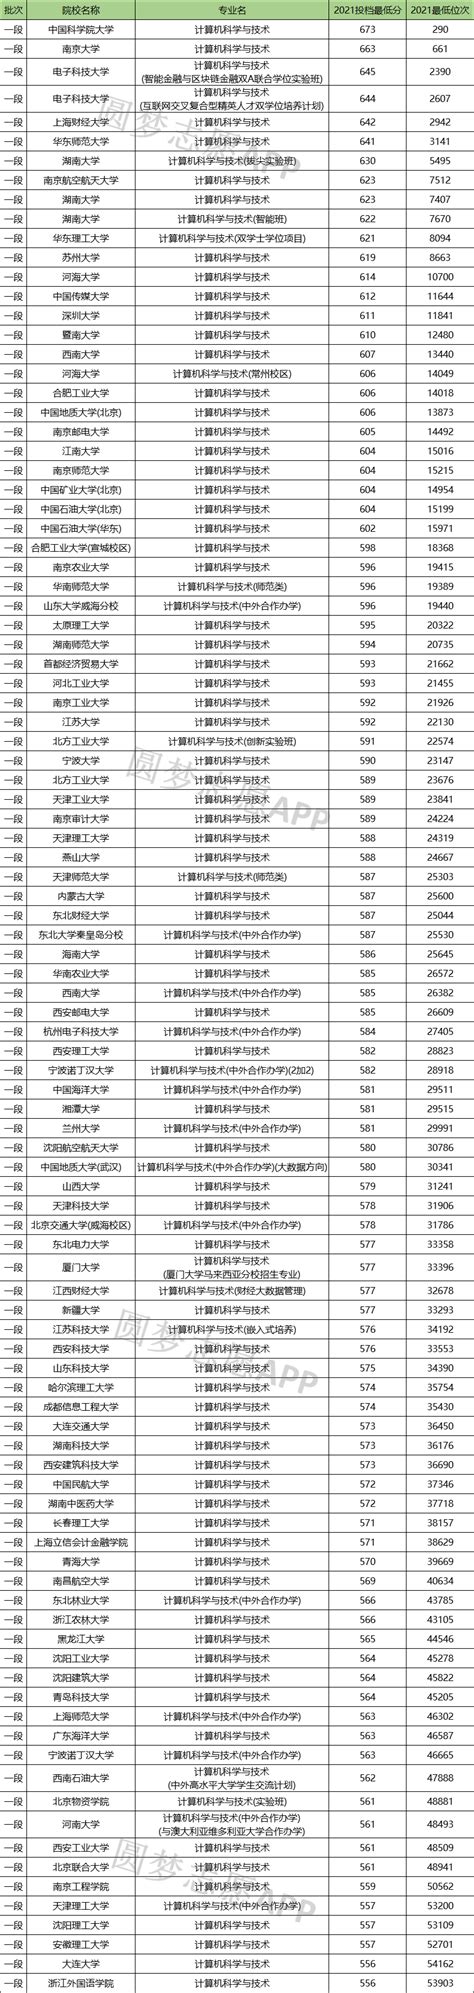 全国985大学计算机专业排名- 2021中国计算机专业大学排名-高考100